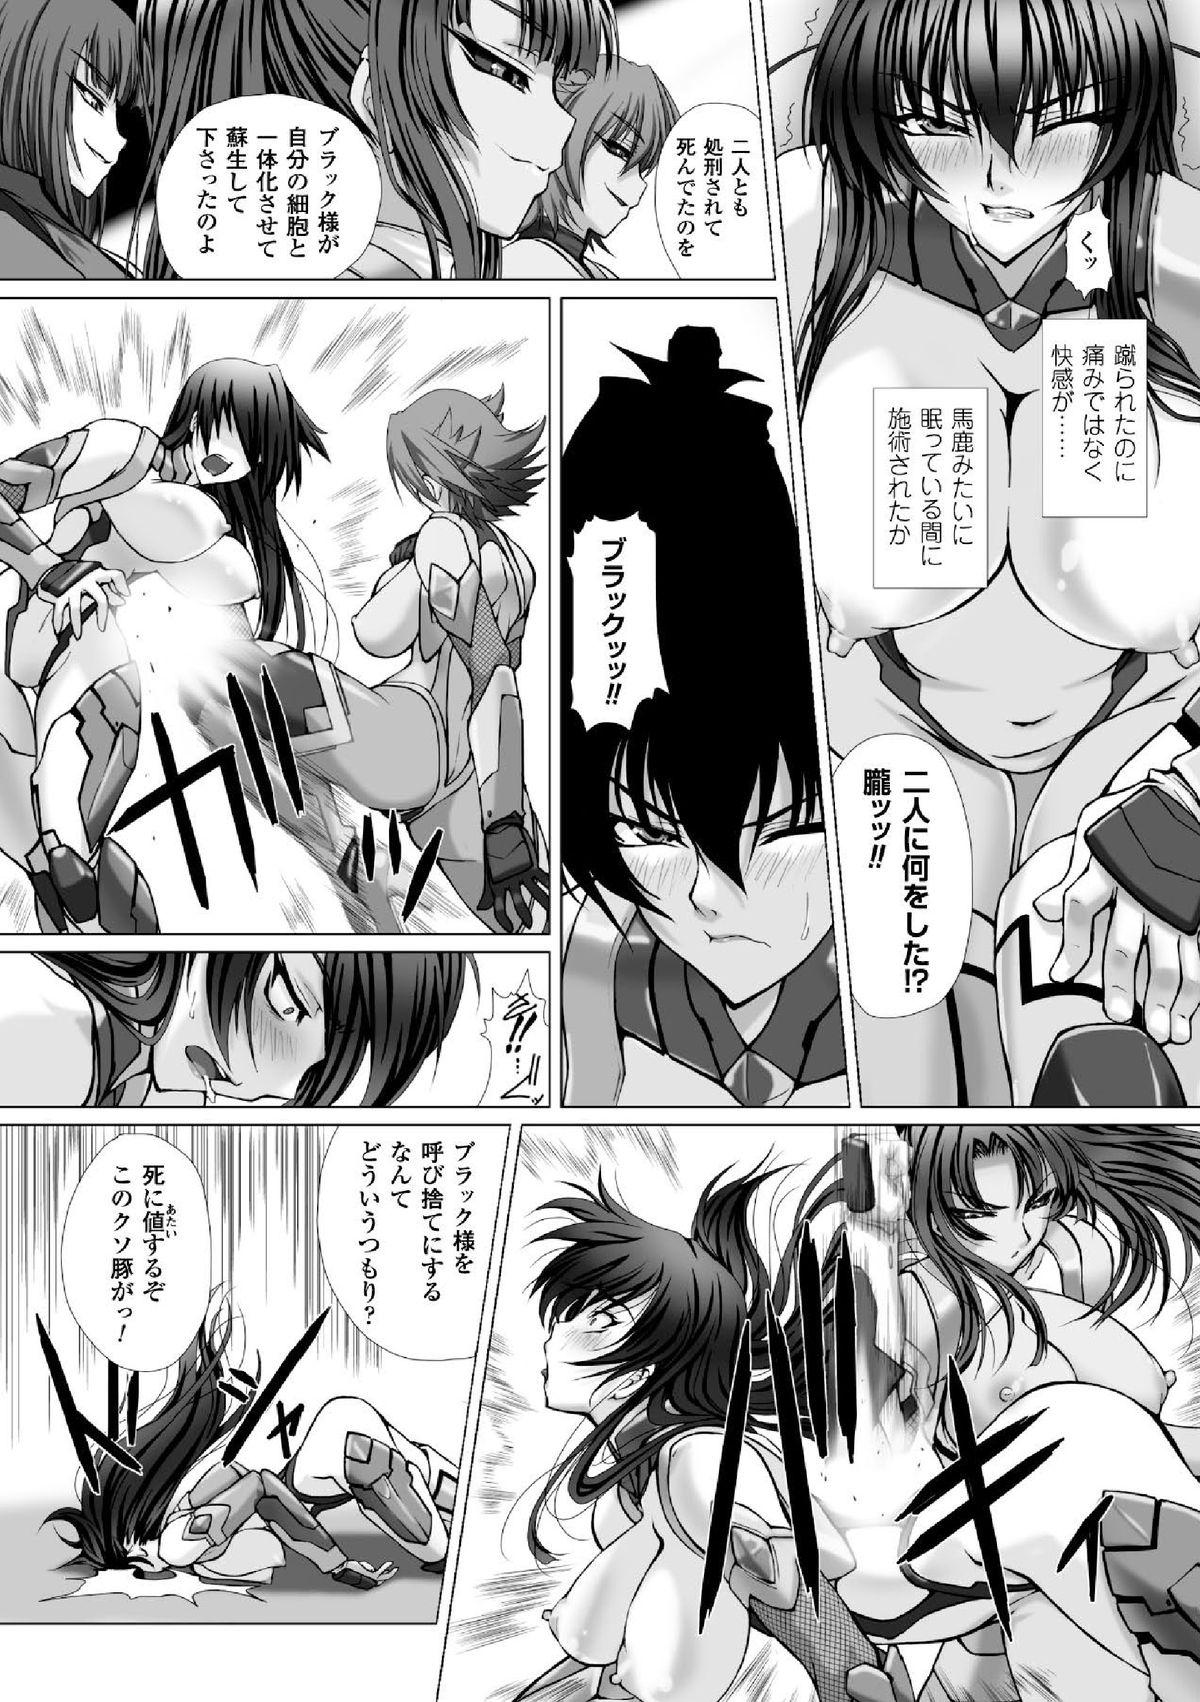 Sologirl Megami Crisis 16 - Taimanin asagi Kangoku senkan Koutetsu no majo annerose Travesti - Page 12